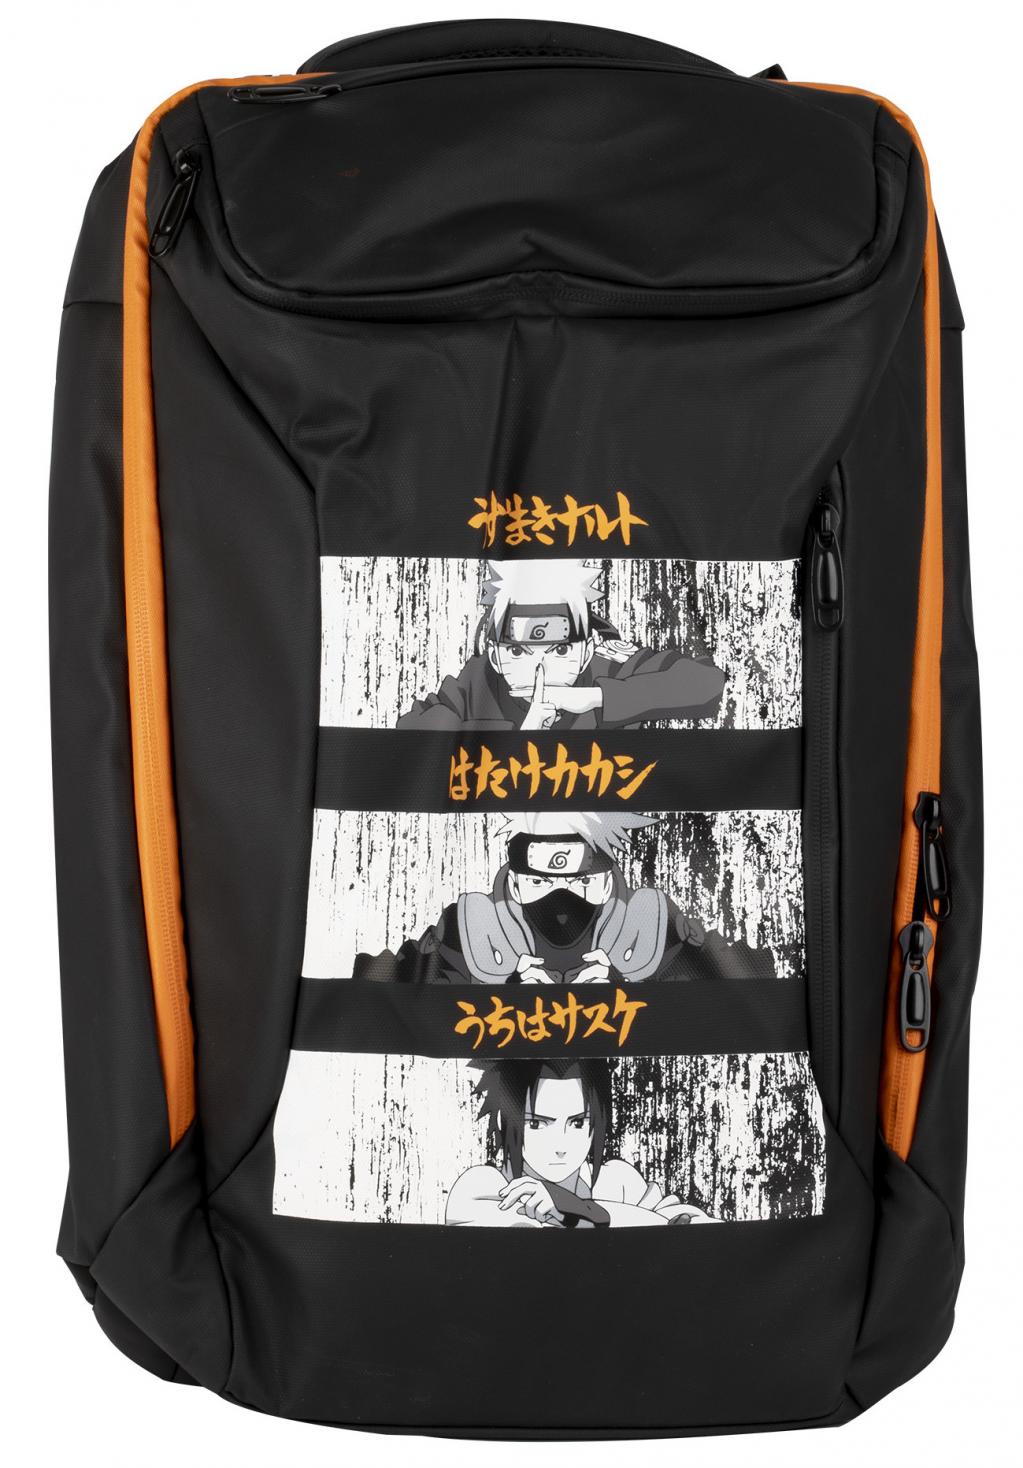 Naruto Backpack Gaming 17